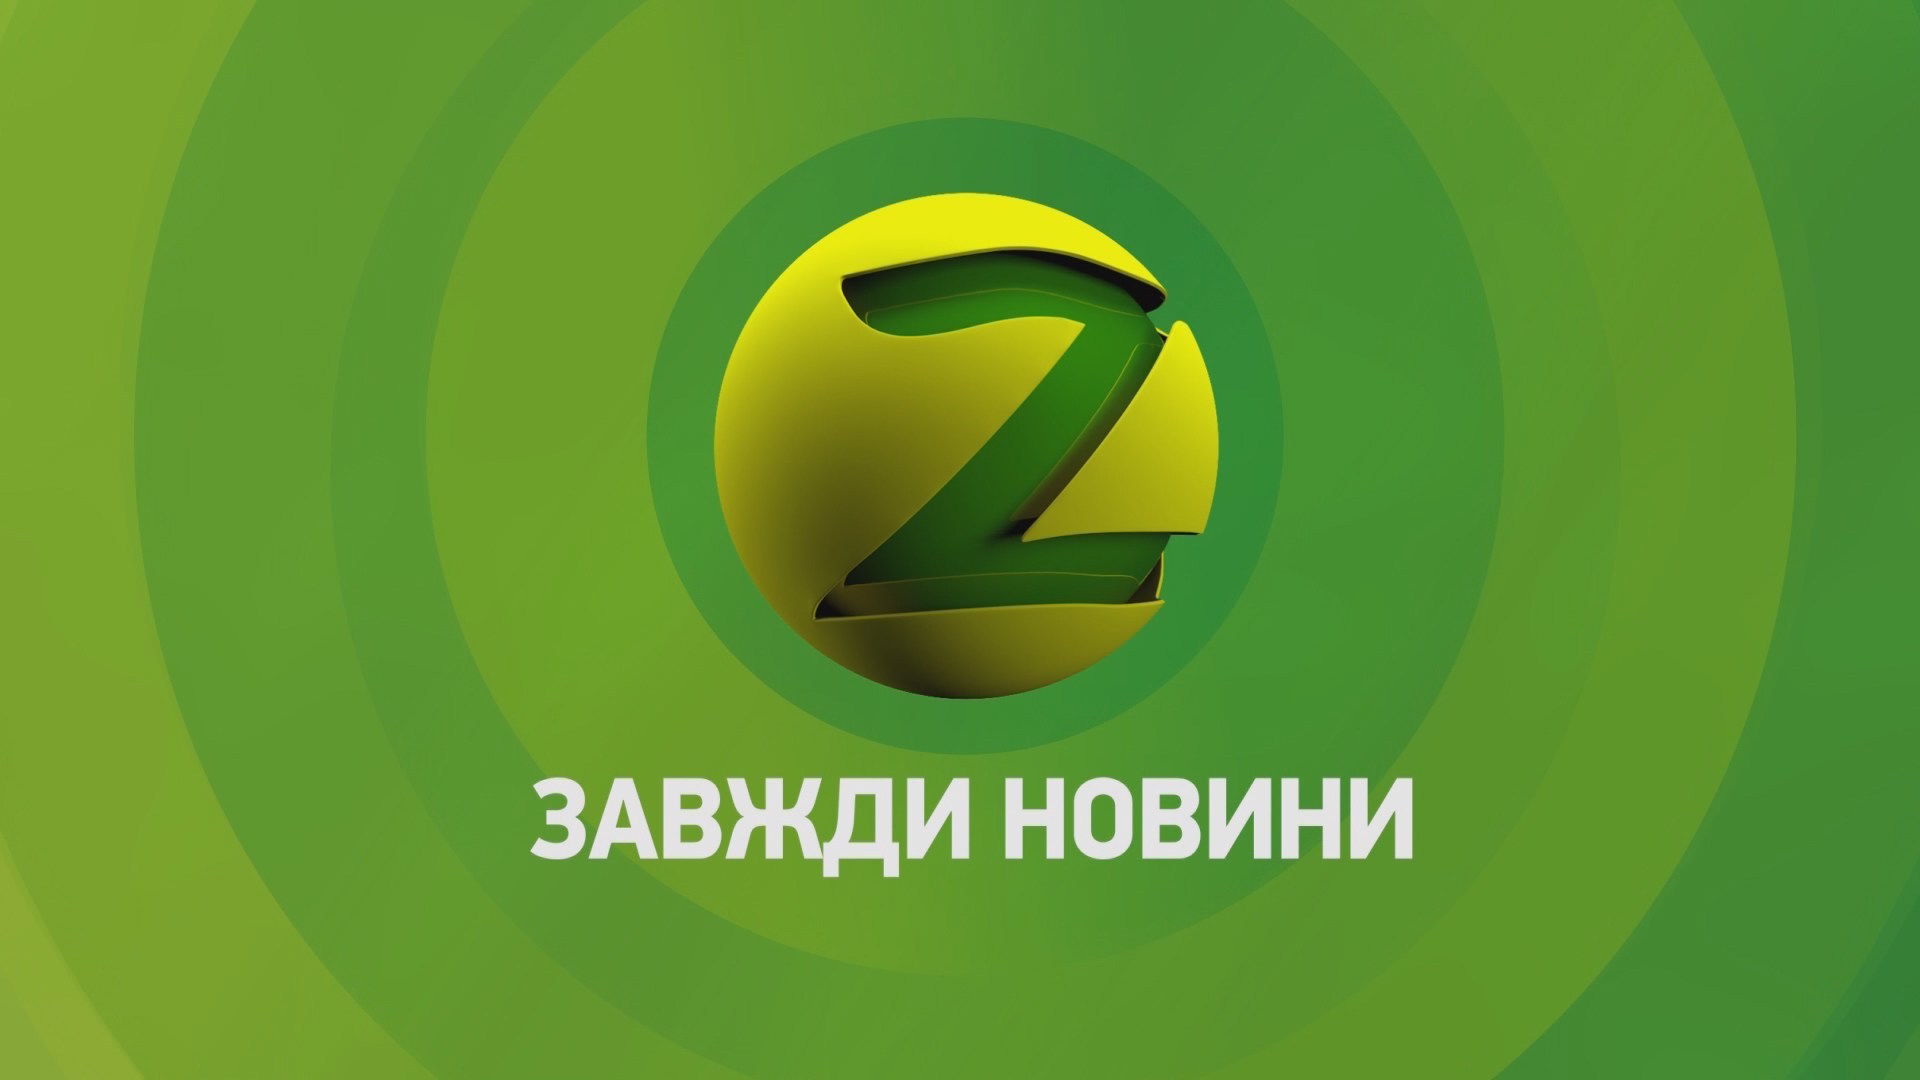 Телеканалу “Z” хотят выделить почти 19 миллионов